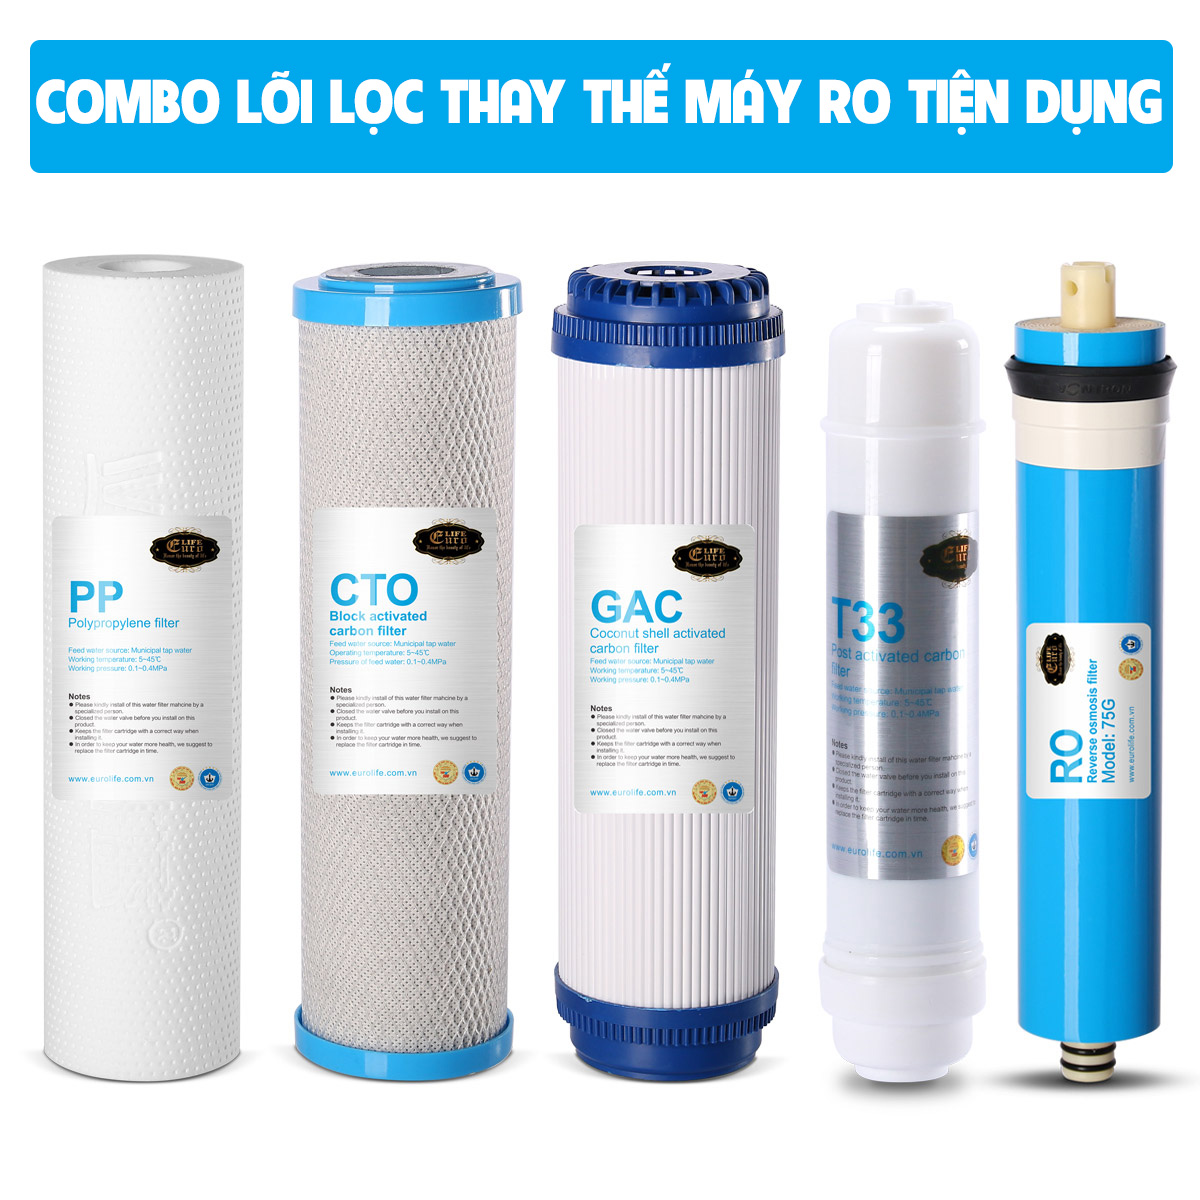 Combo 5 lõi lọc cho máy lọc nước tinh khiết RO Eurolife COMBO-LL-RO